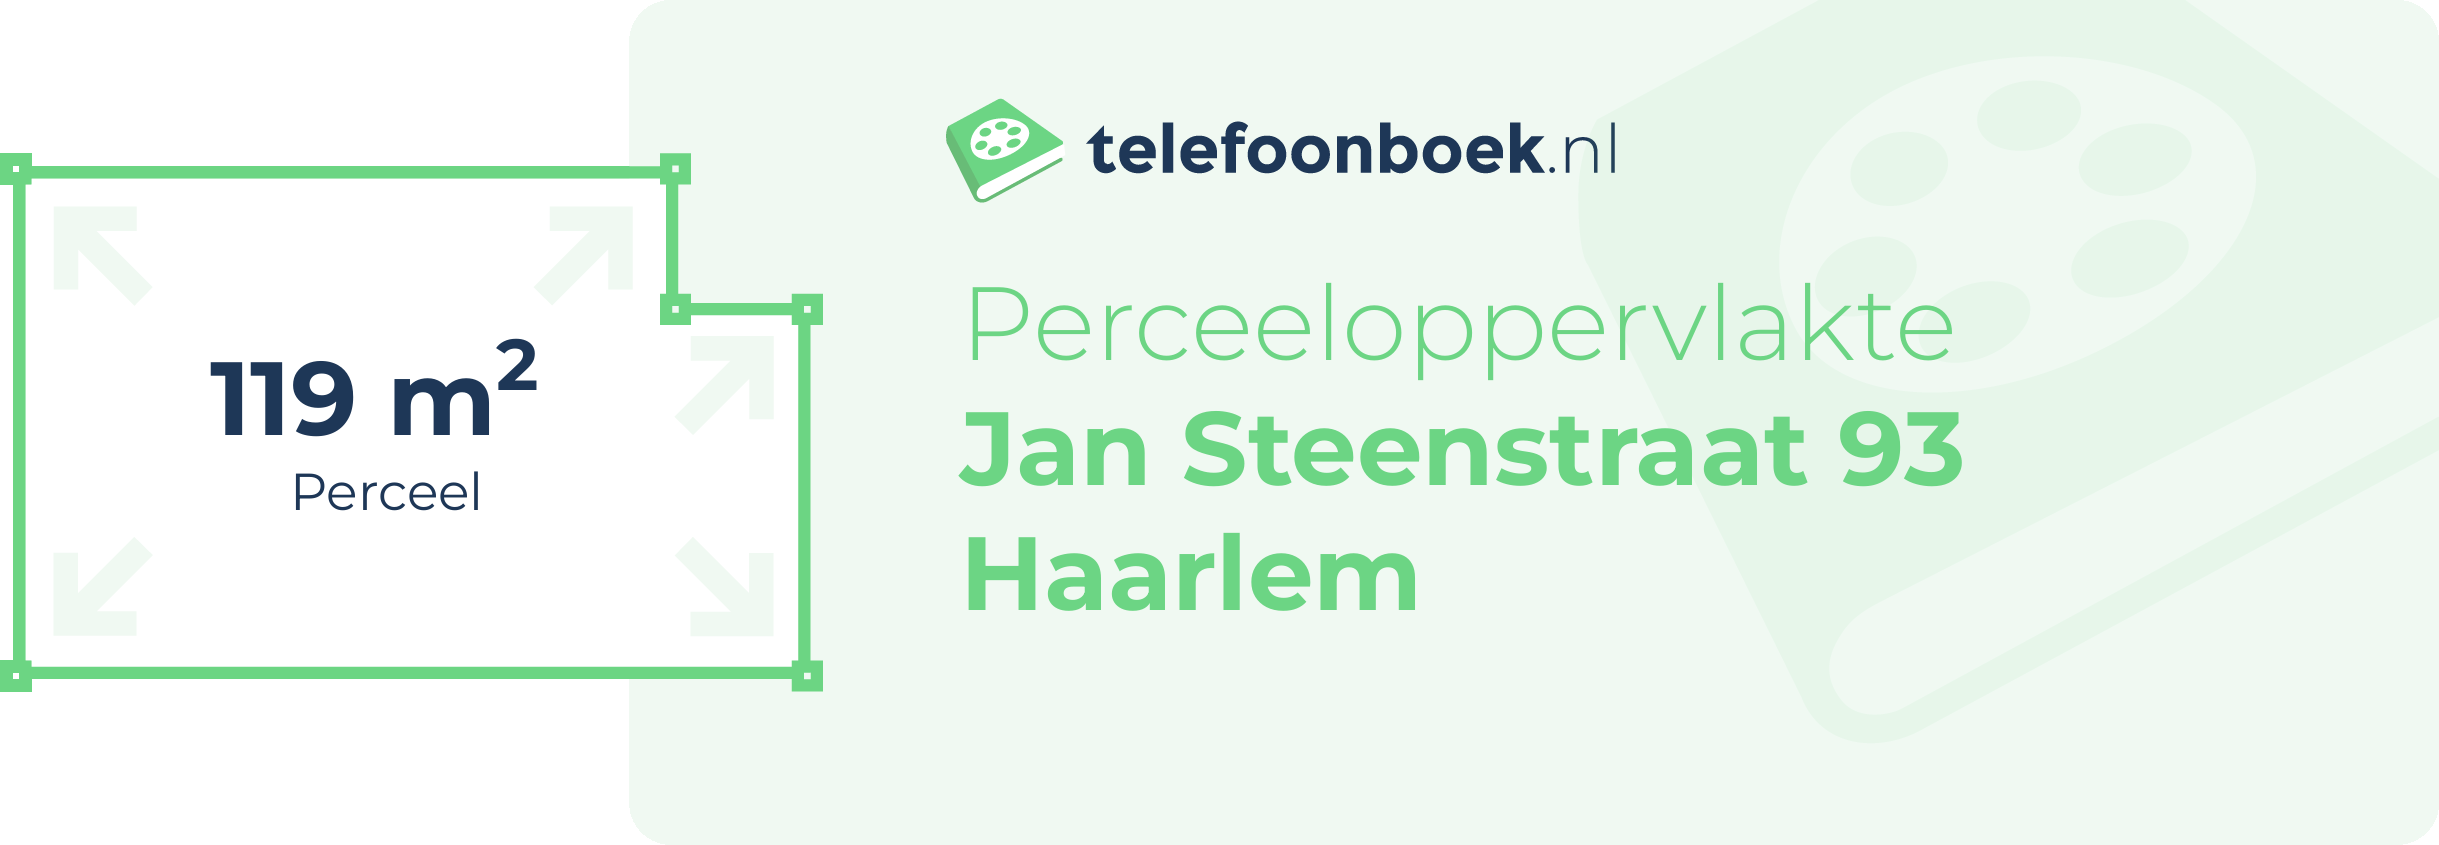 Perceeloppervlakte Jan Steenstraat 93 Haarlem